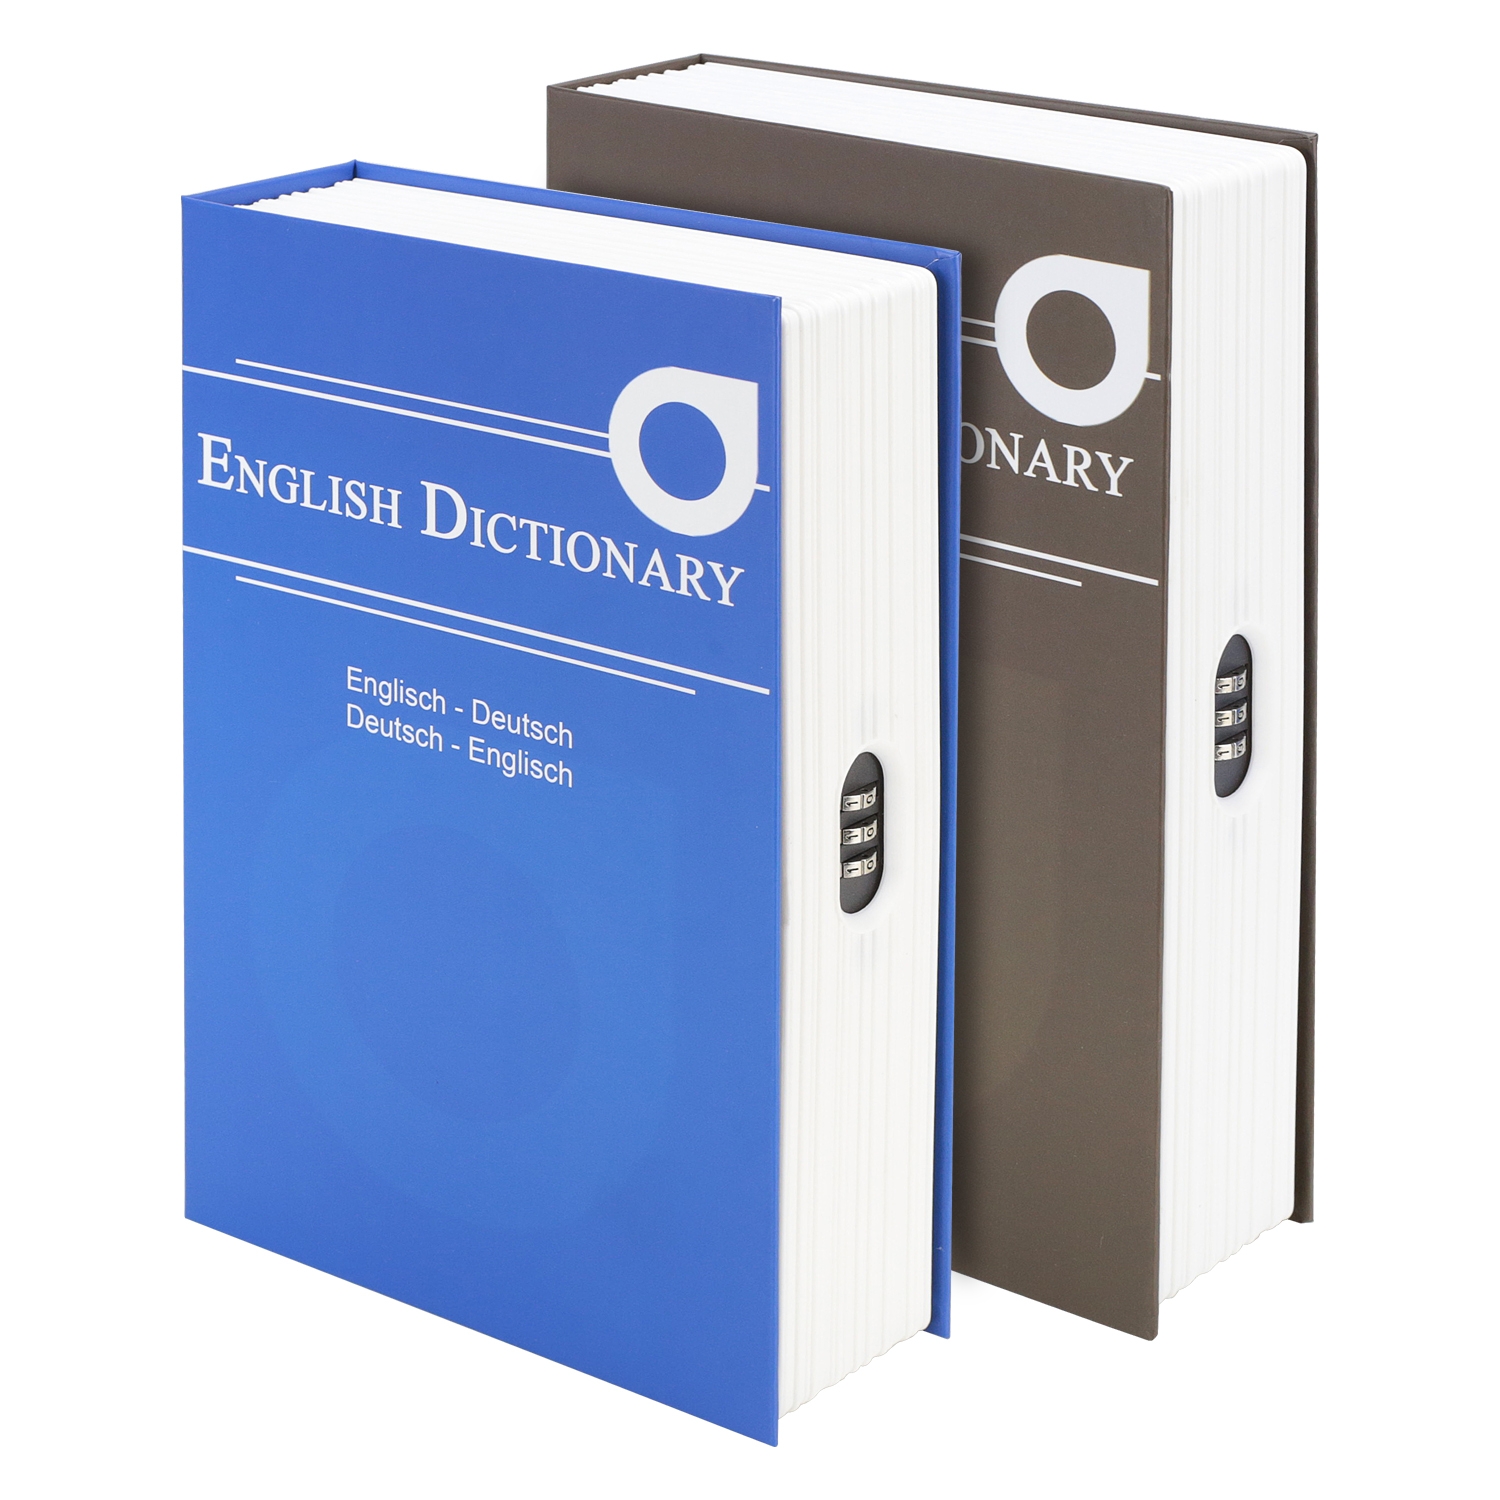 Buchtresor English Dictionary mit Zahlenschloss von HMF mit 23,5 cm Breite in Braun